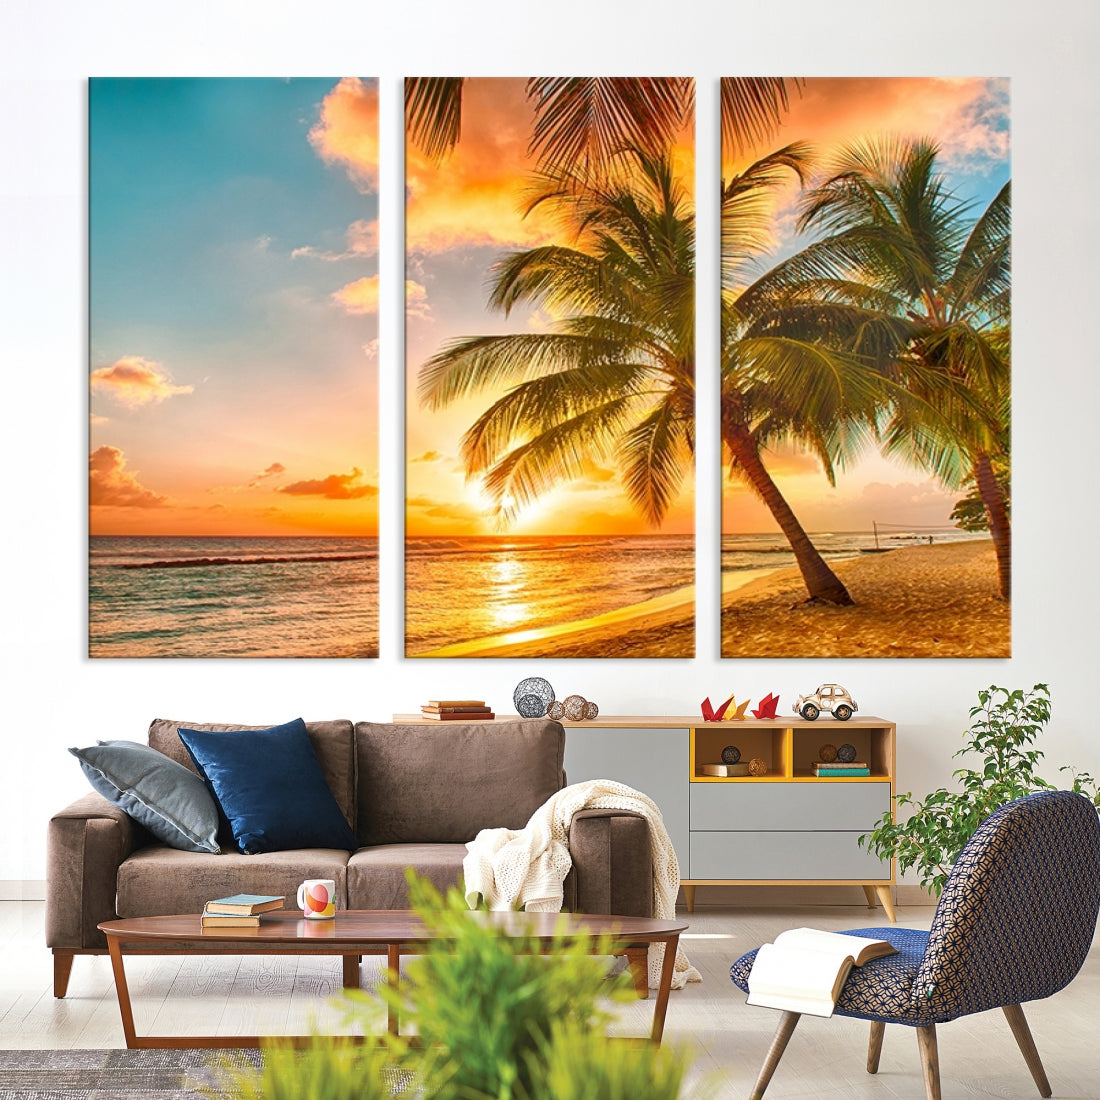 Large Wall Art Canvas Beautiful Palms on Beach at Sunset